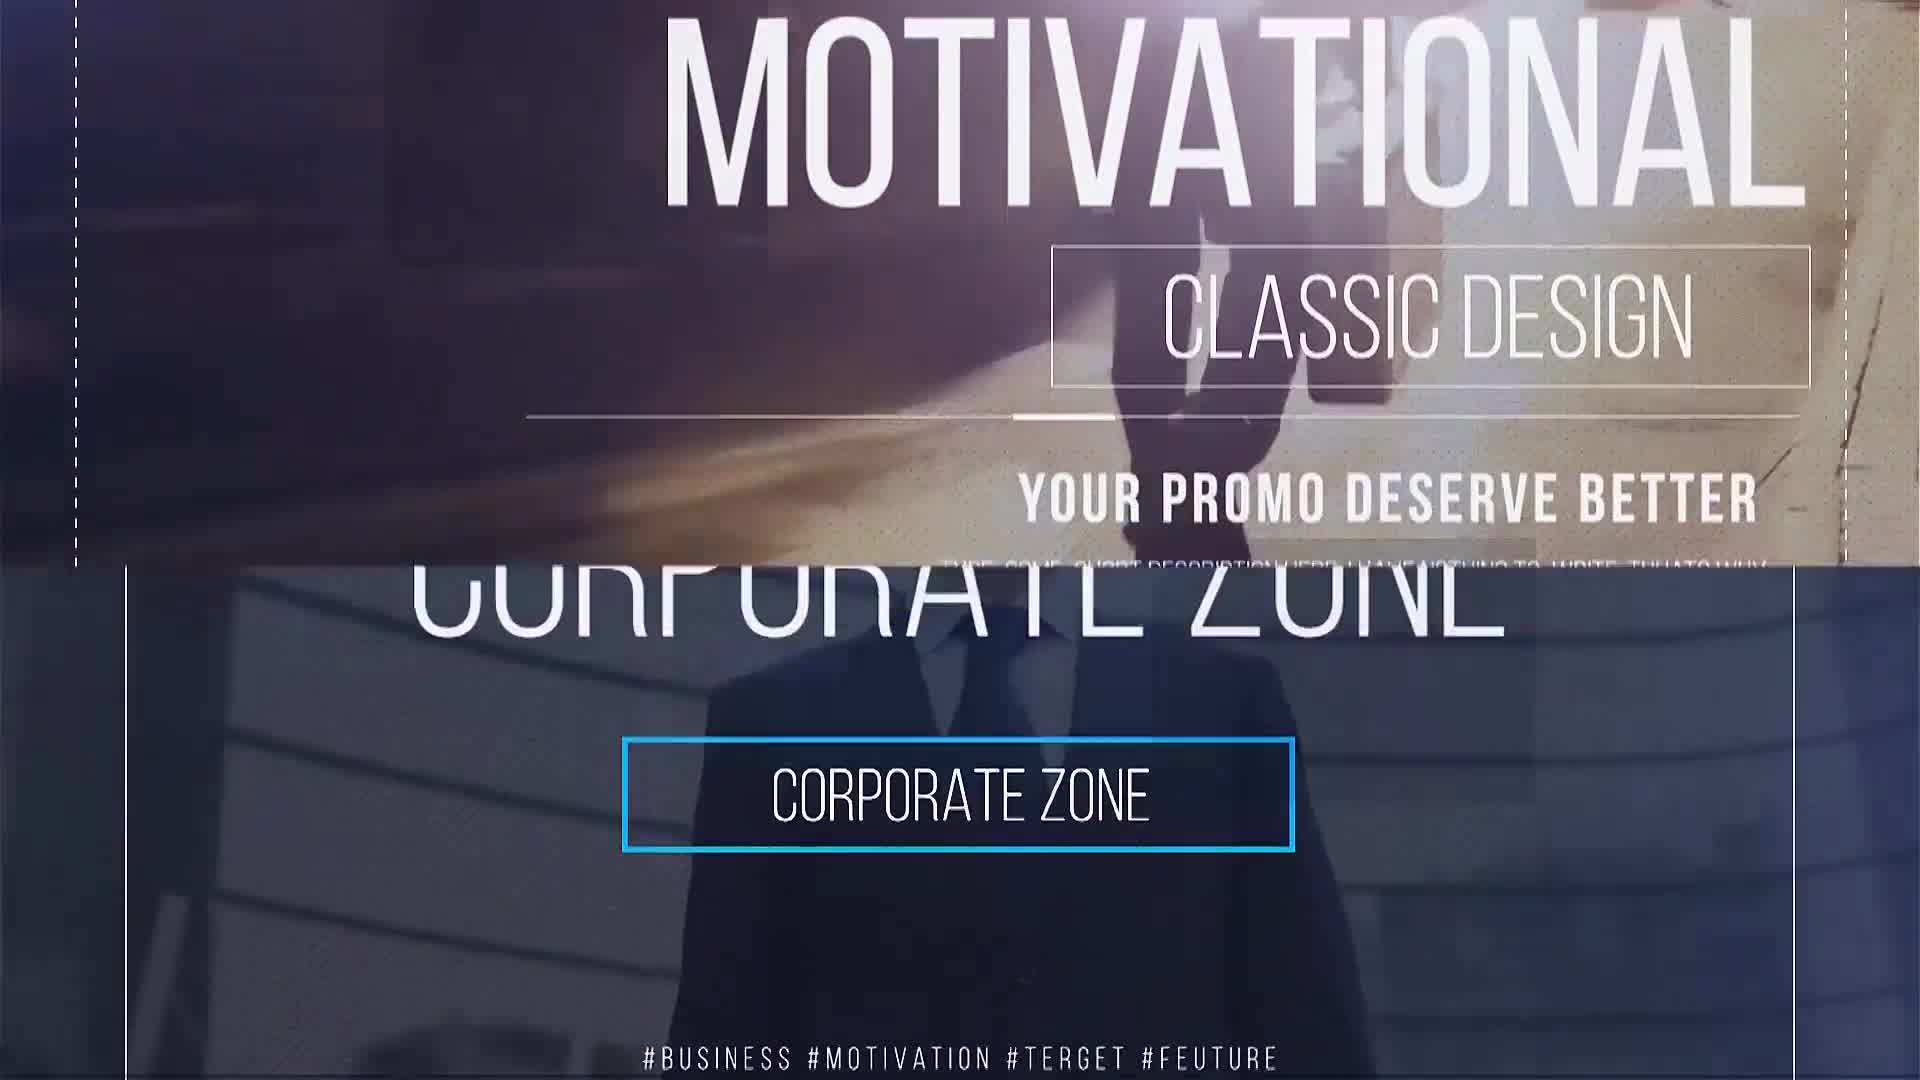 Corporate Zone - Download Videohive 22376993